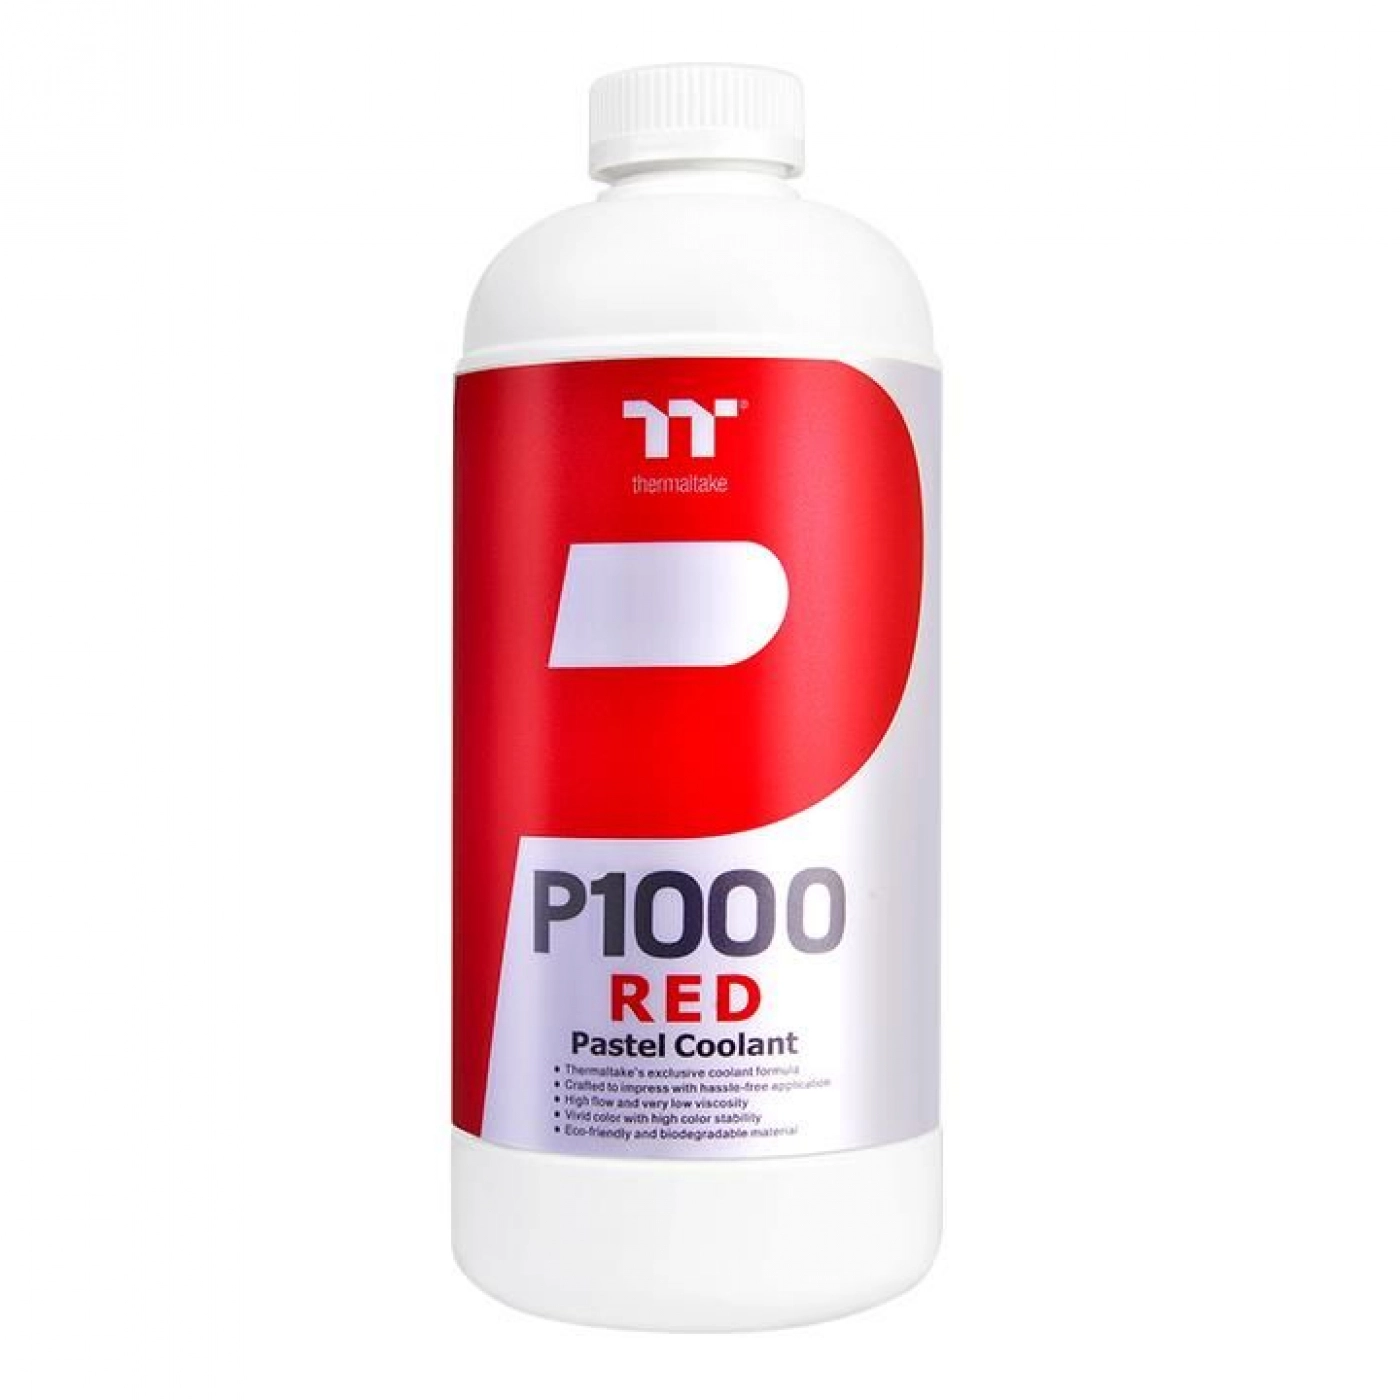 Купить Охлаждающая жидкость Thermaltake P1000 Pastel Coolant - Red (CL-W246-OS00RE-A) - фото 1